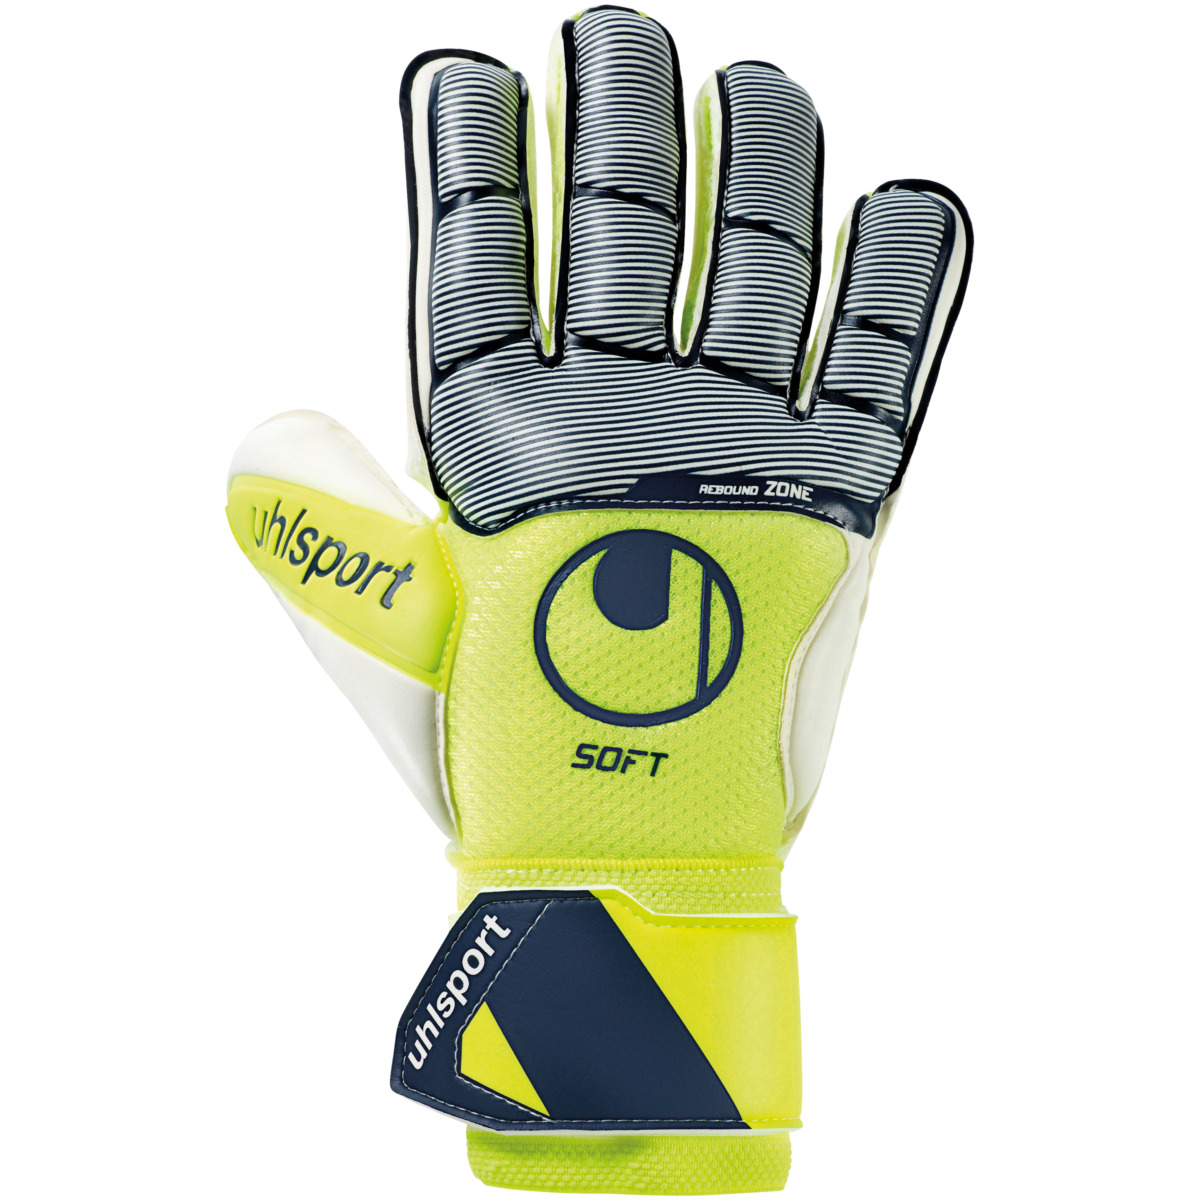 SOFT Goalkeeper Gloves uhlsport Goalkeeper Shop